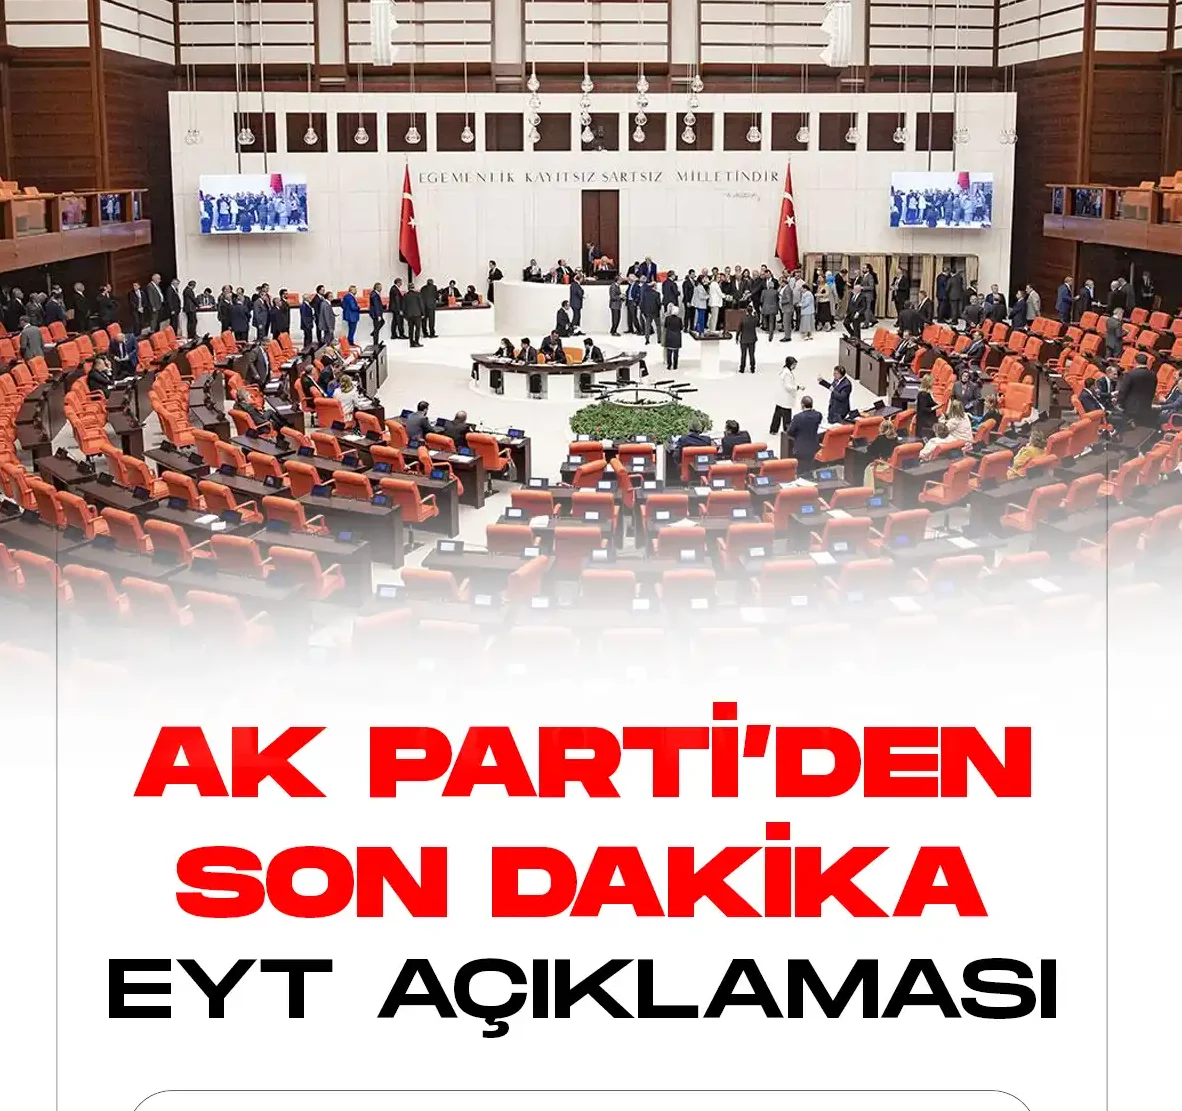 AK Partiden son dakika EYT açıklaması geldi.